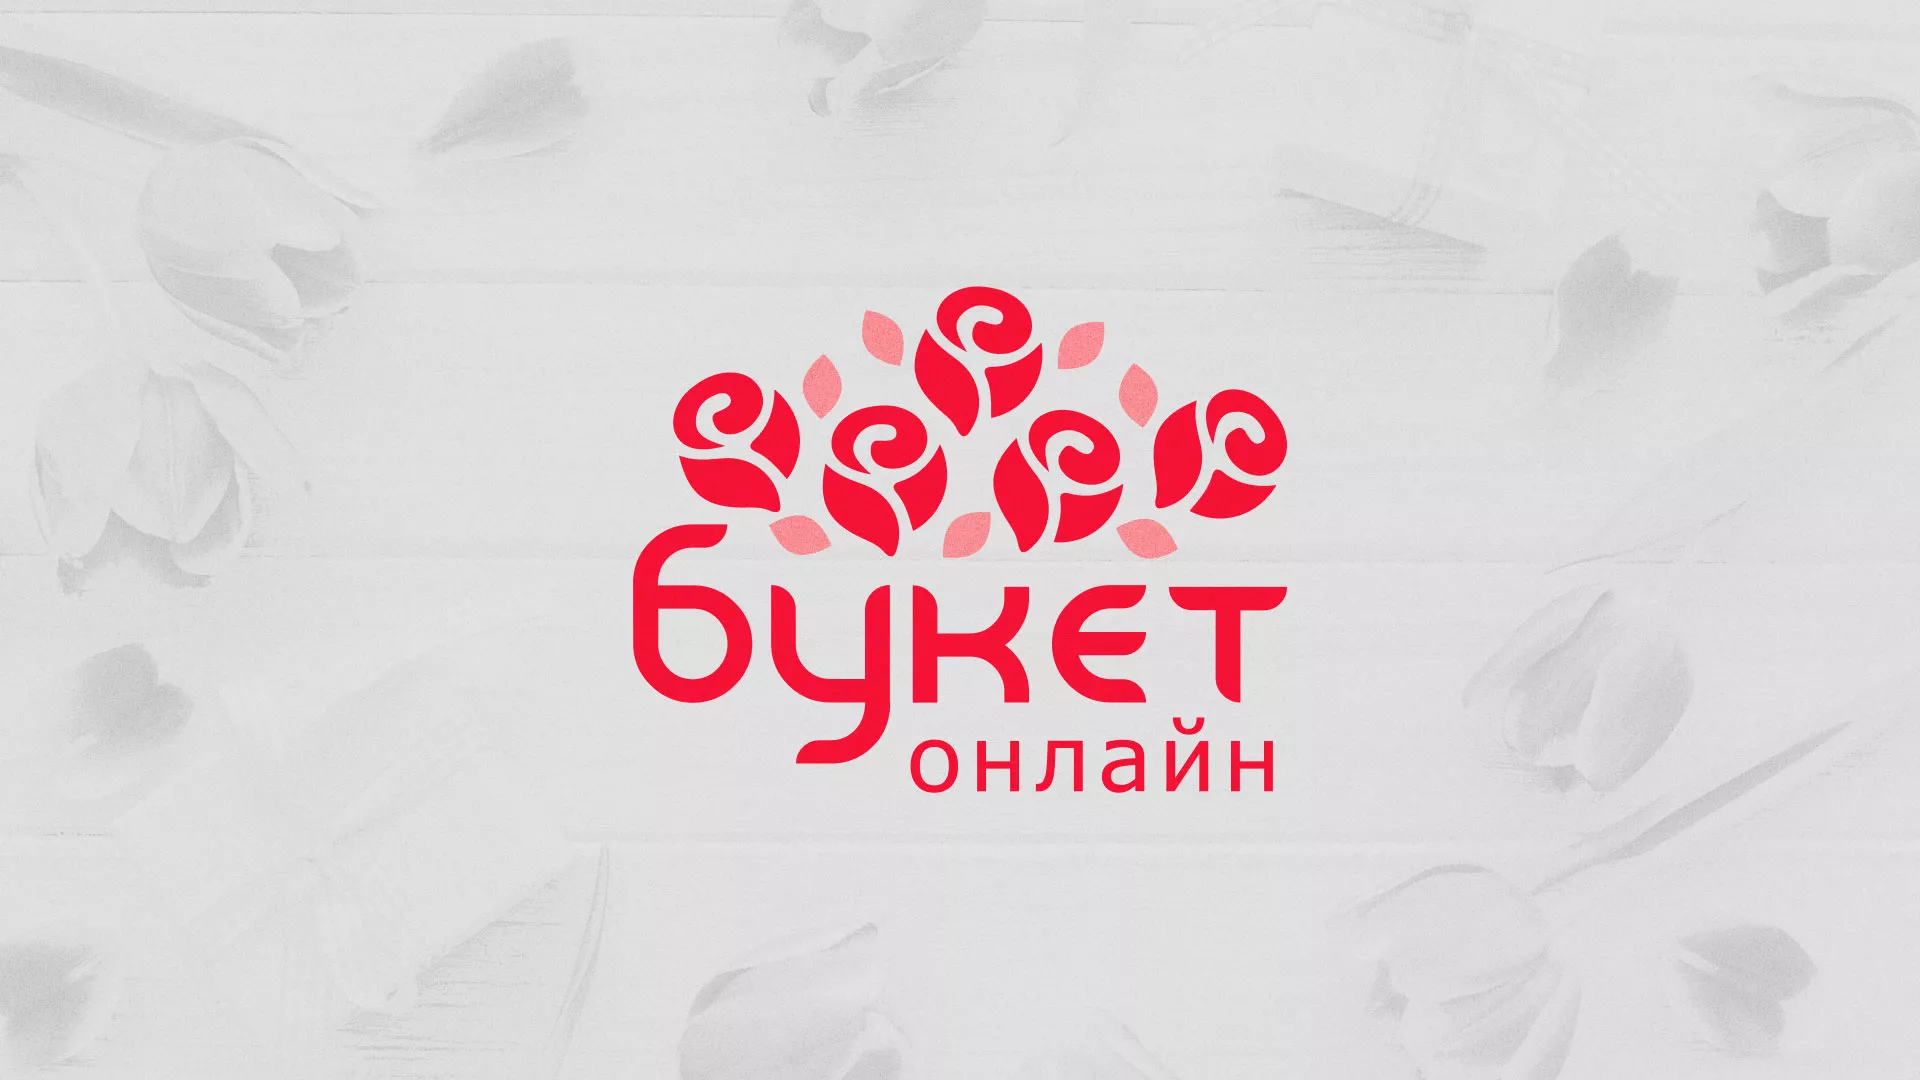 Создание интернет-магазина «Букет-онлайн» по цветам в Радужном